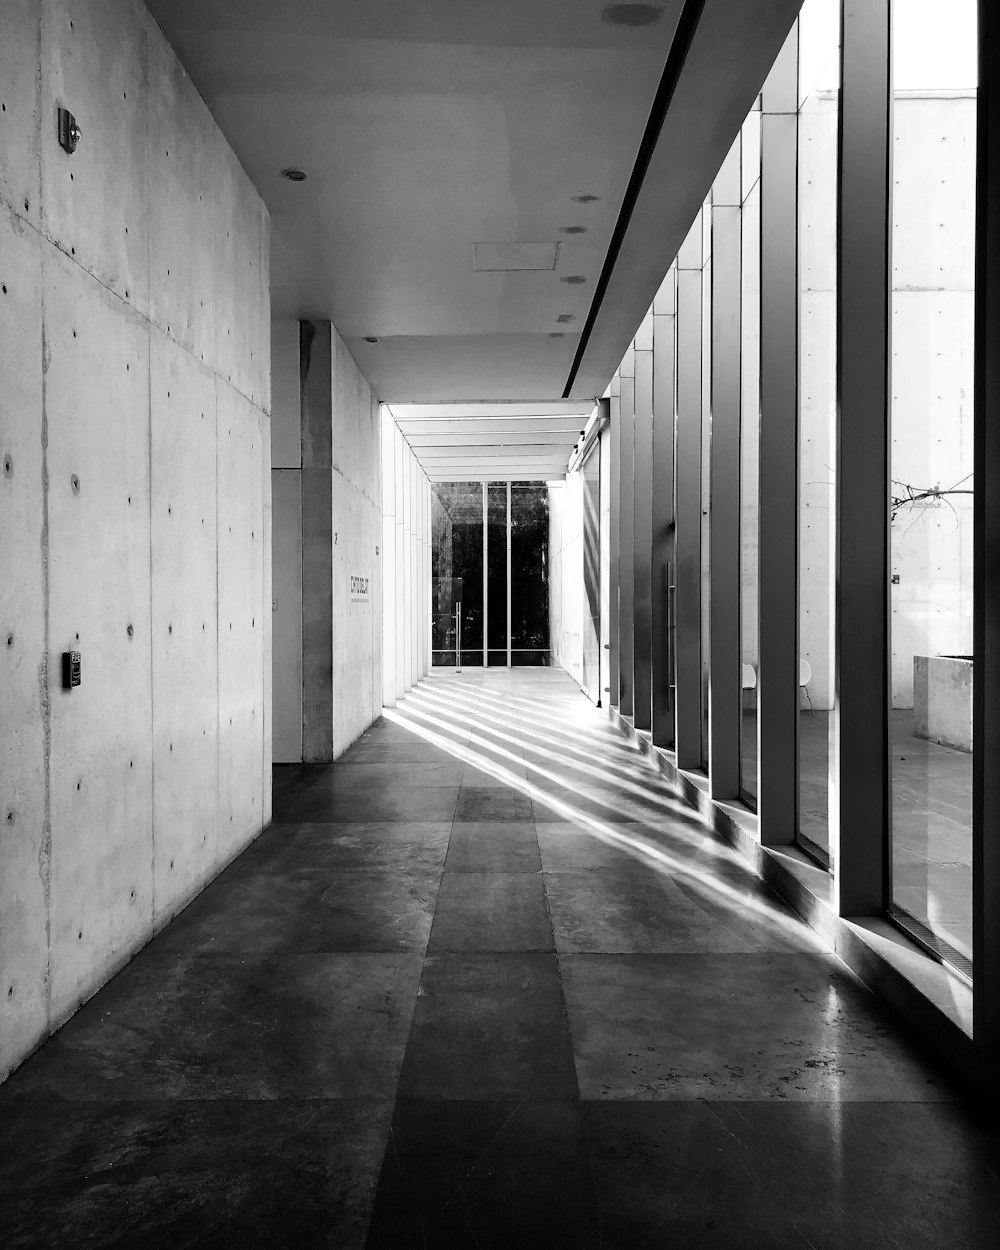 Foto in scala di grigi del corridoio con finestre di vetro